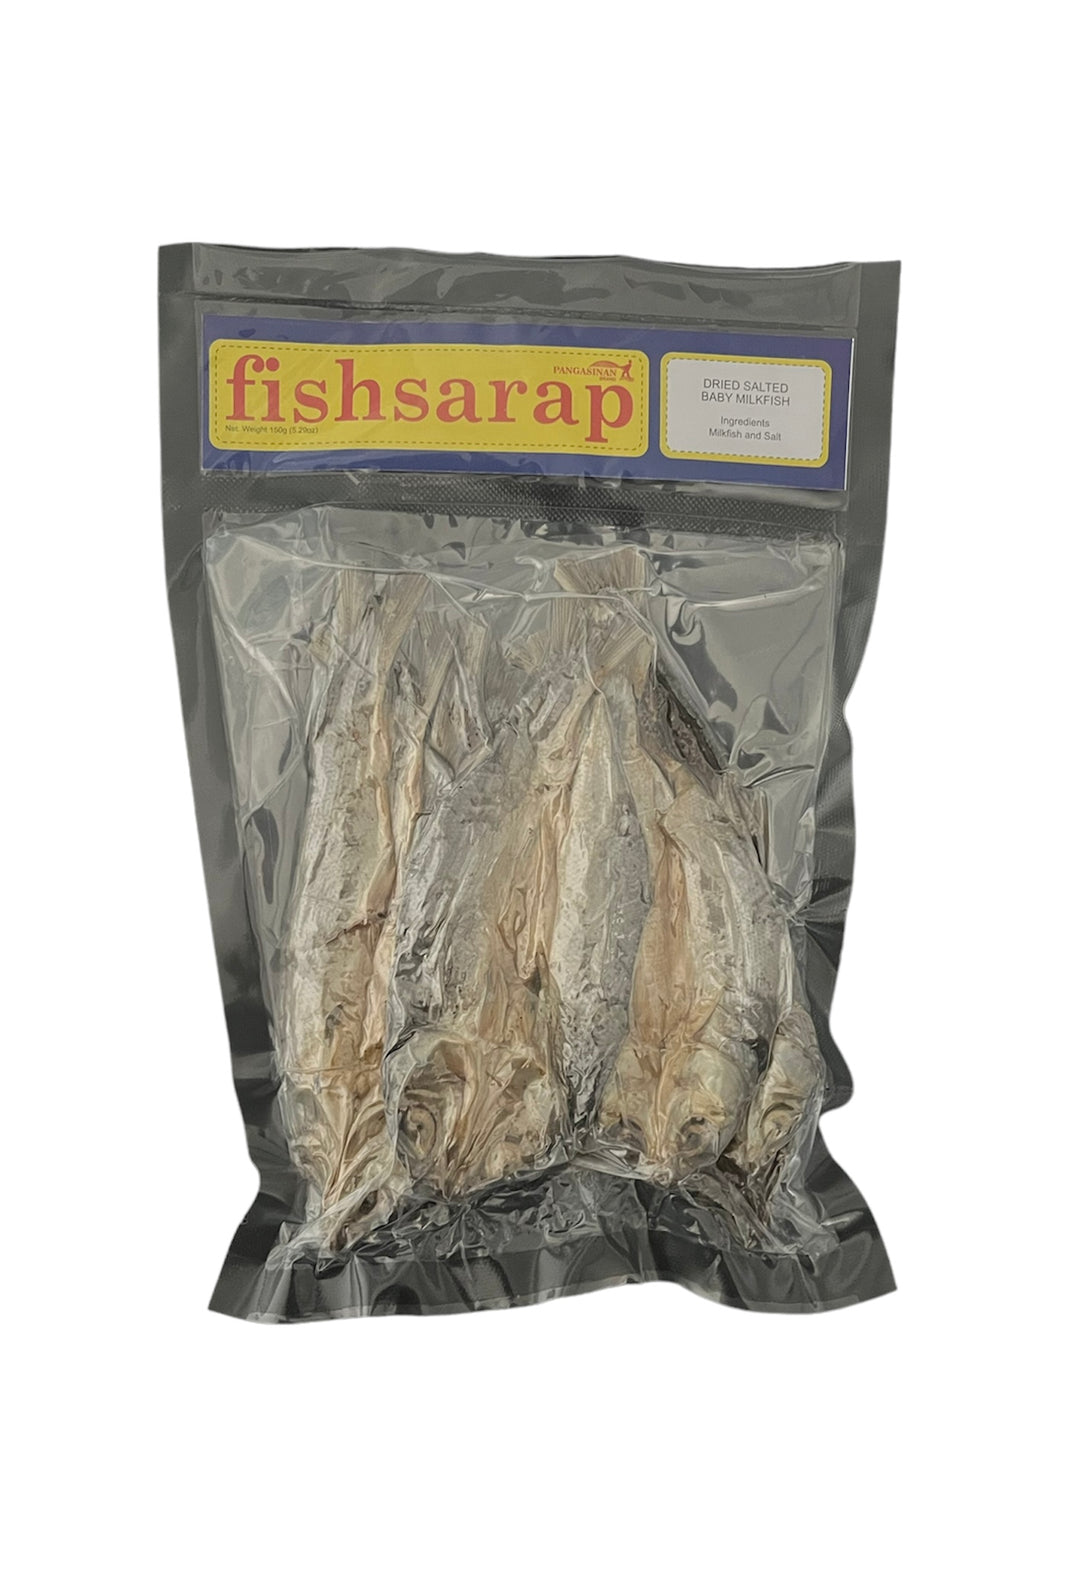 Pangasinan - Fishsarap - Dried Salted Baby Milkfish 5.29 oz